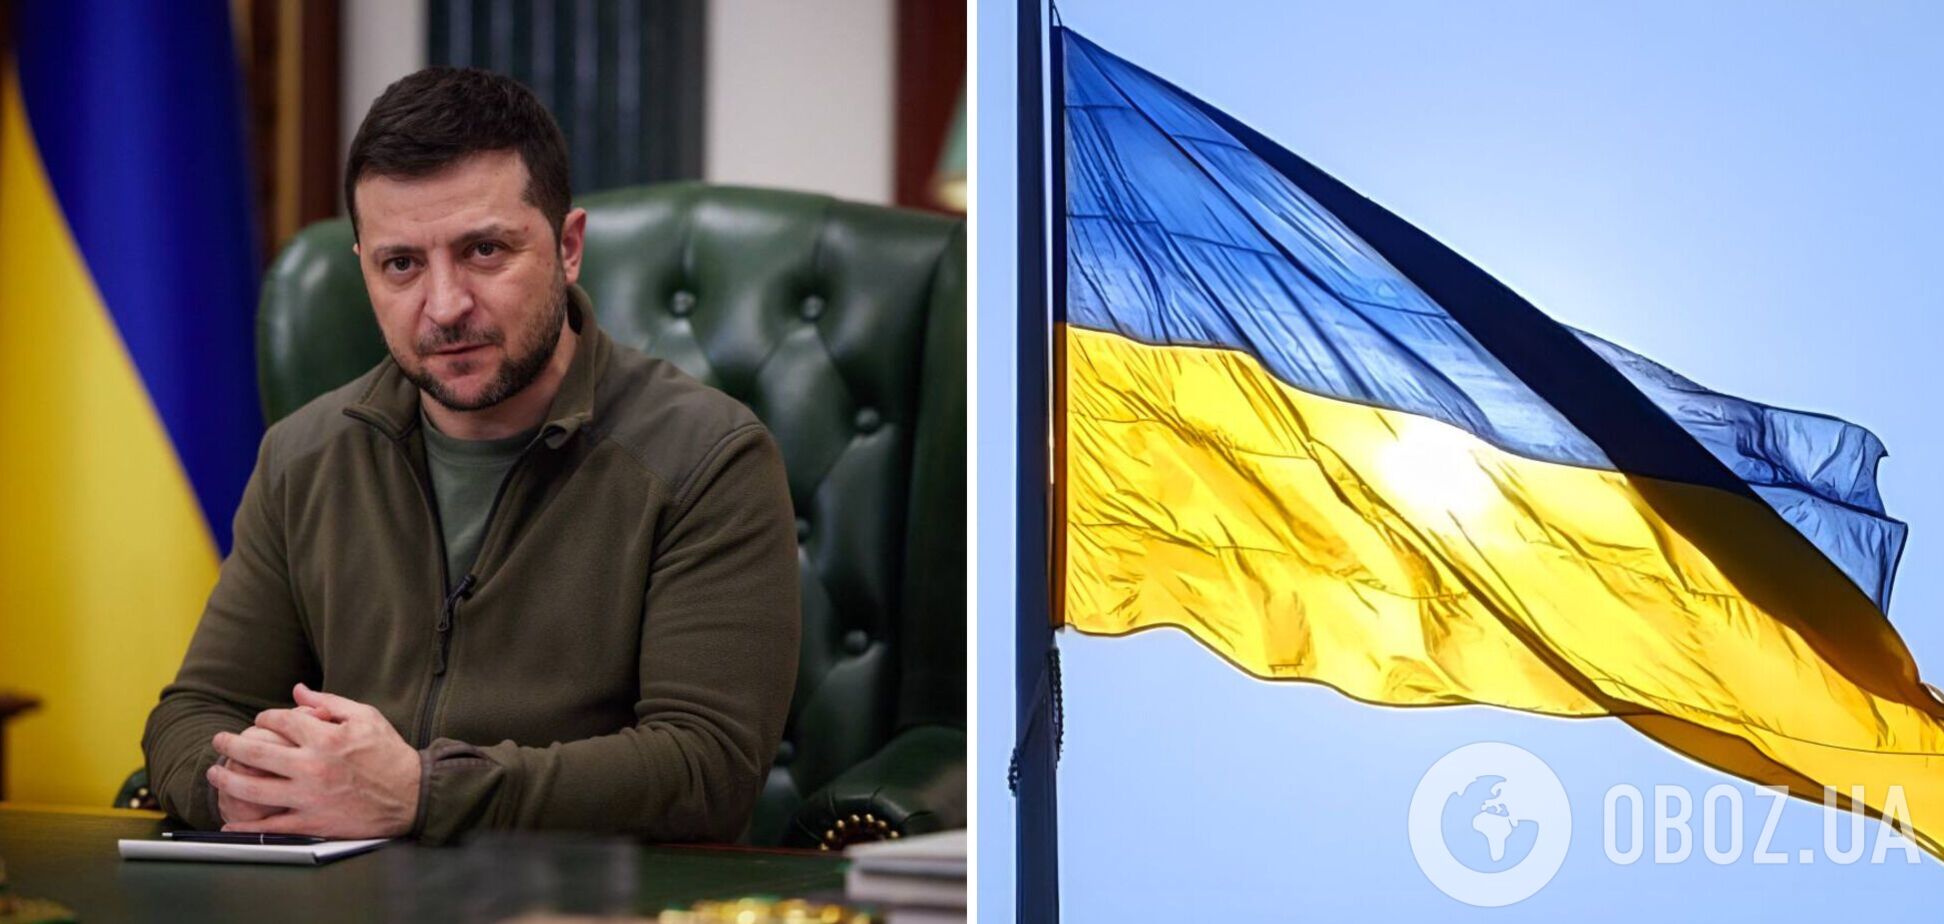 Зеленский поздравил украинцев с Днем Государственного флага: сине-желтый стал символом борьбы за свободу. Видео